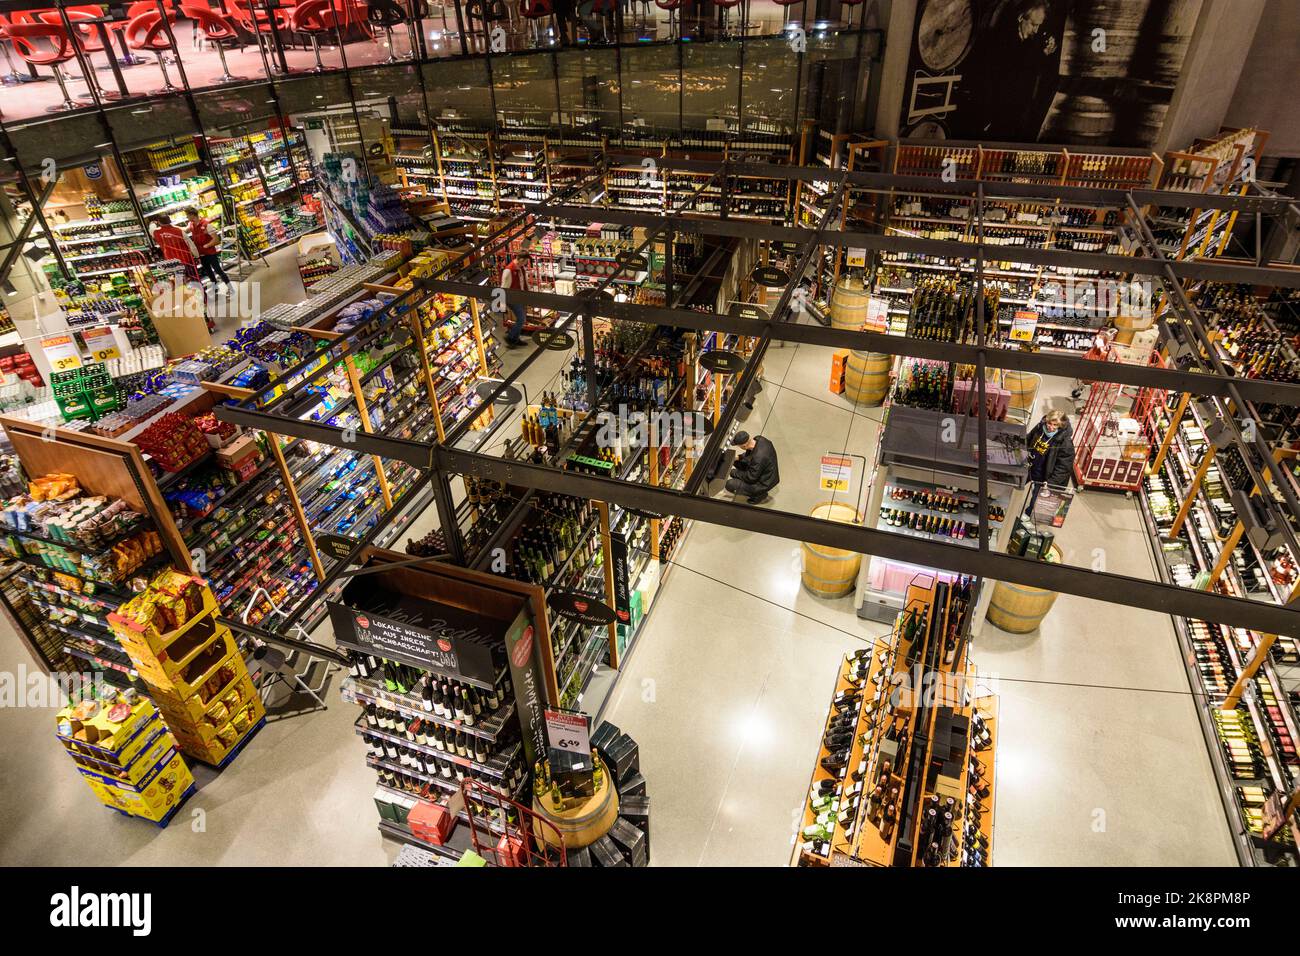 Wien, Vienne : supermarché Interspar hypermarché, magasin de restauration, dans le centre commercial du 19 e trimestre. Döbling, Wien, Autriche Banque D'Images